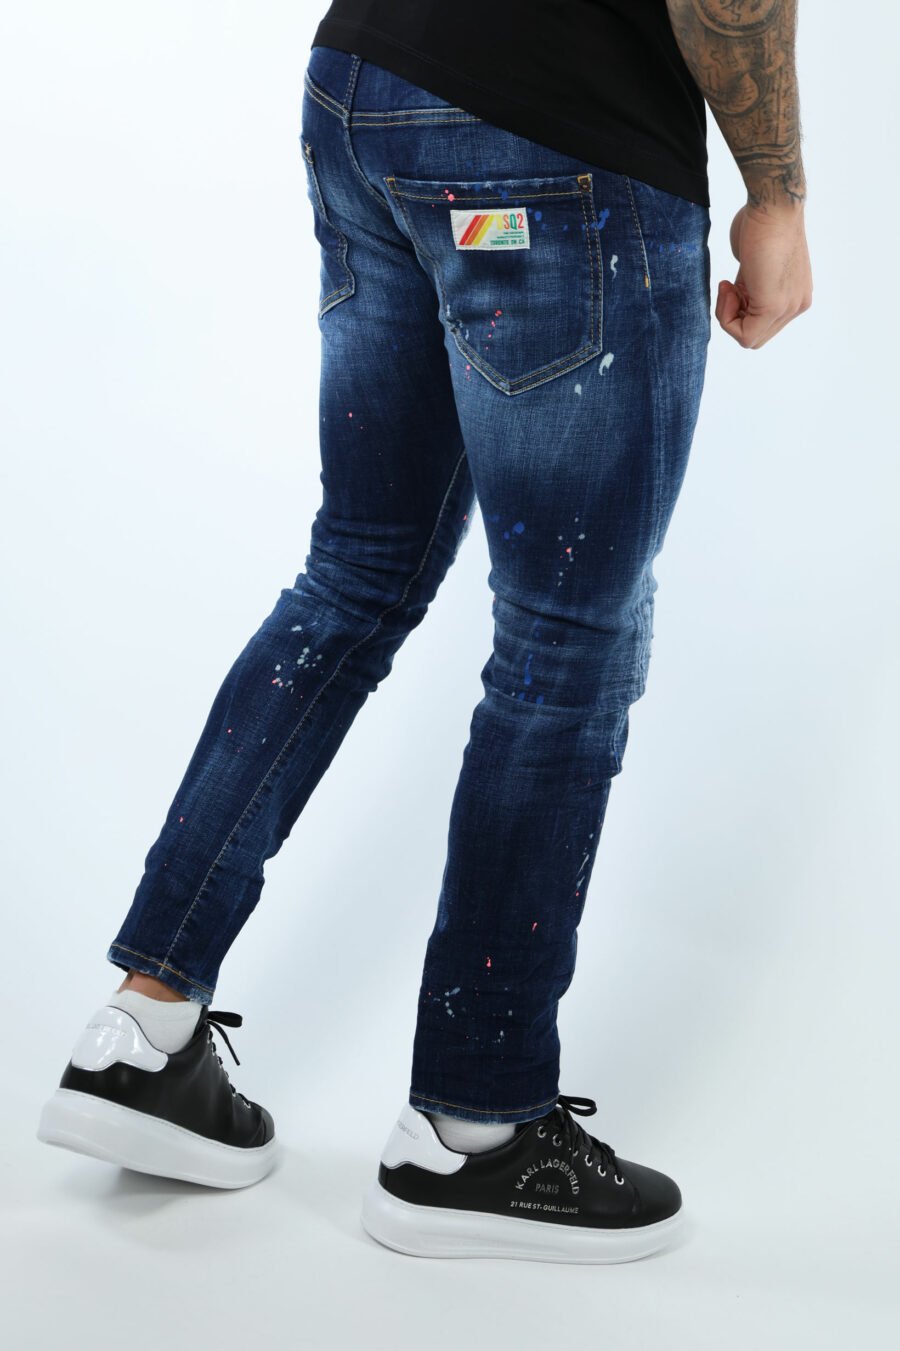 Pantalón vaquero azul "sexy twist jean" desgastado con pintura naranja - 106915